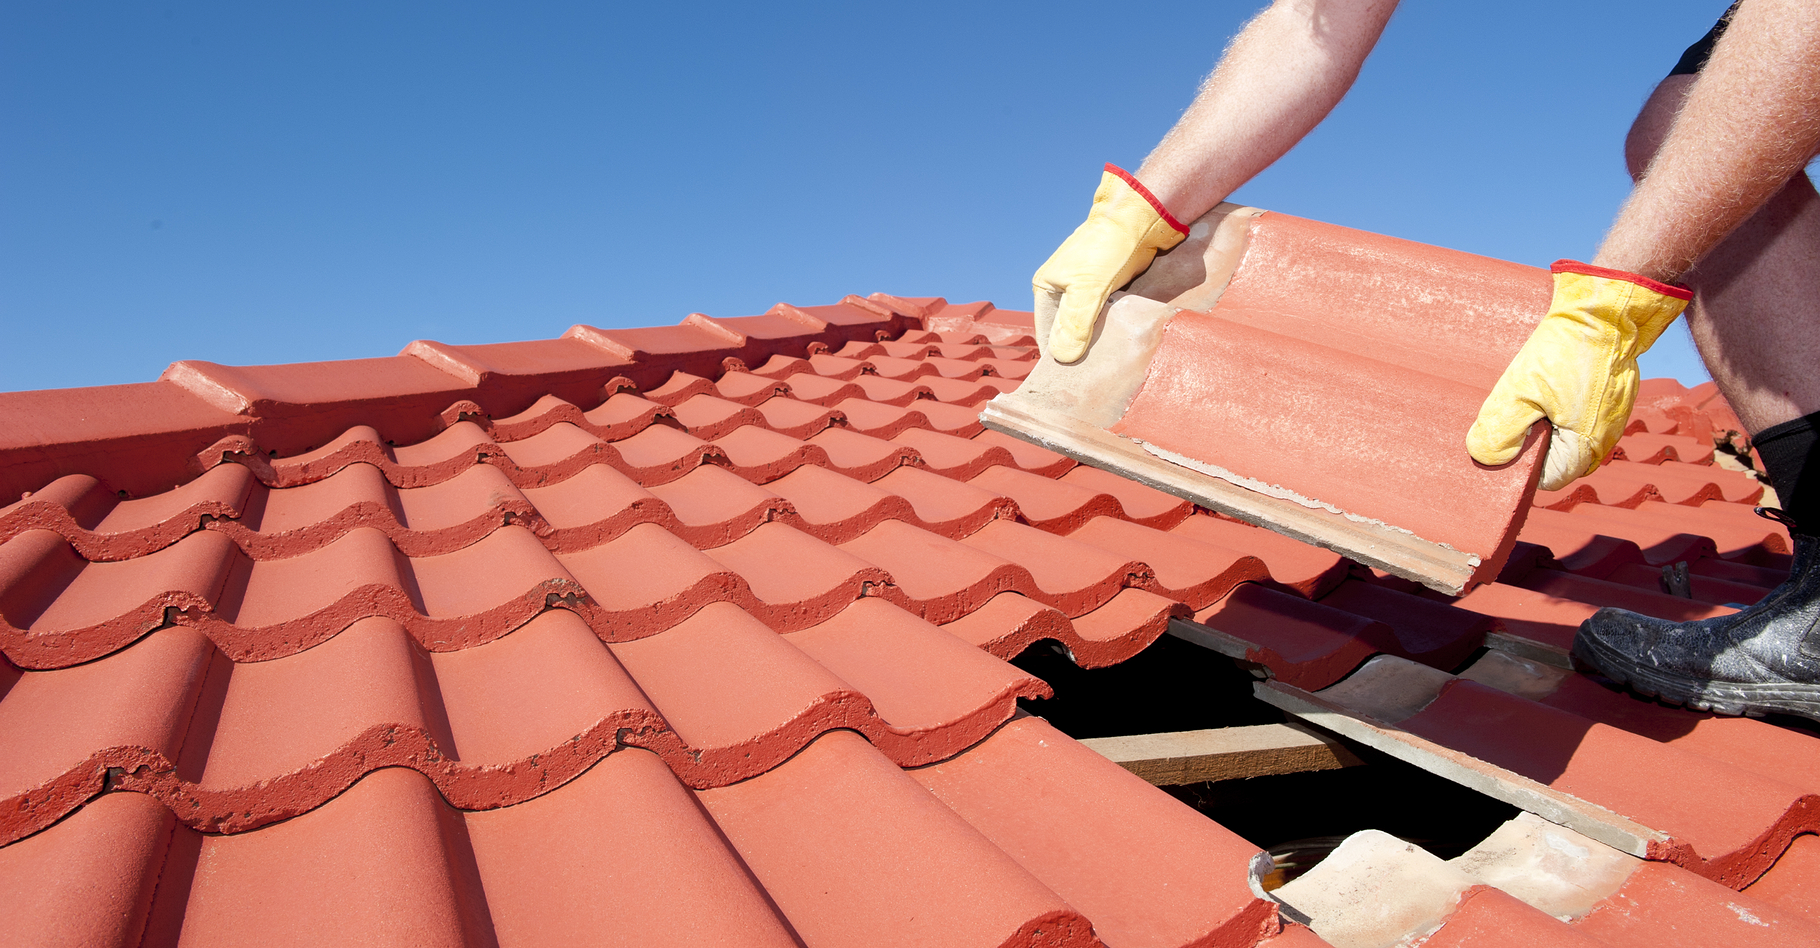 Les normes pour les pentes de toit doivent être respectées. © Rob Bayer, Shutterstock